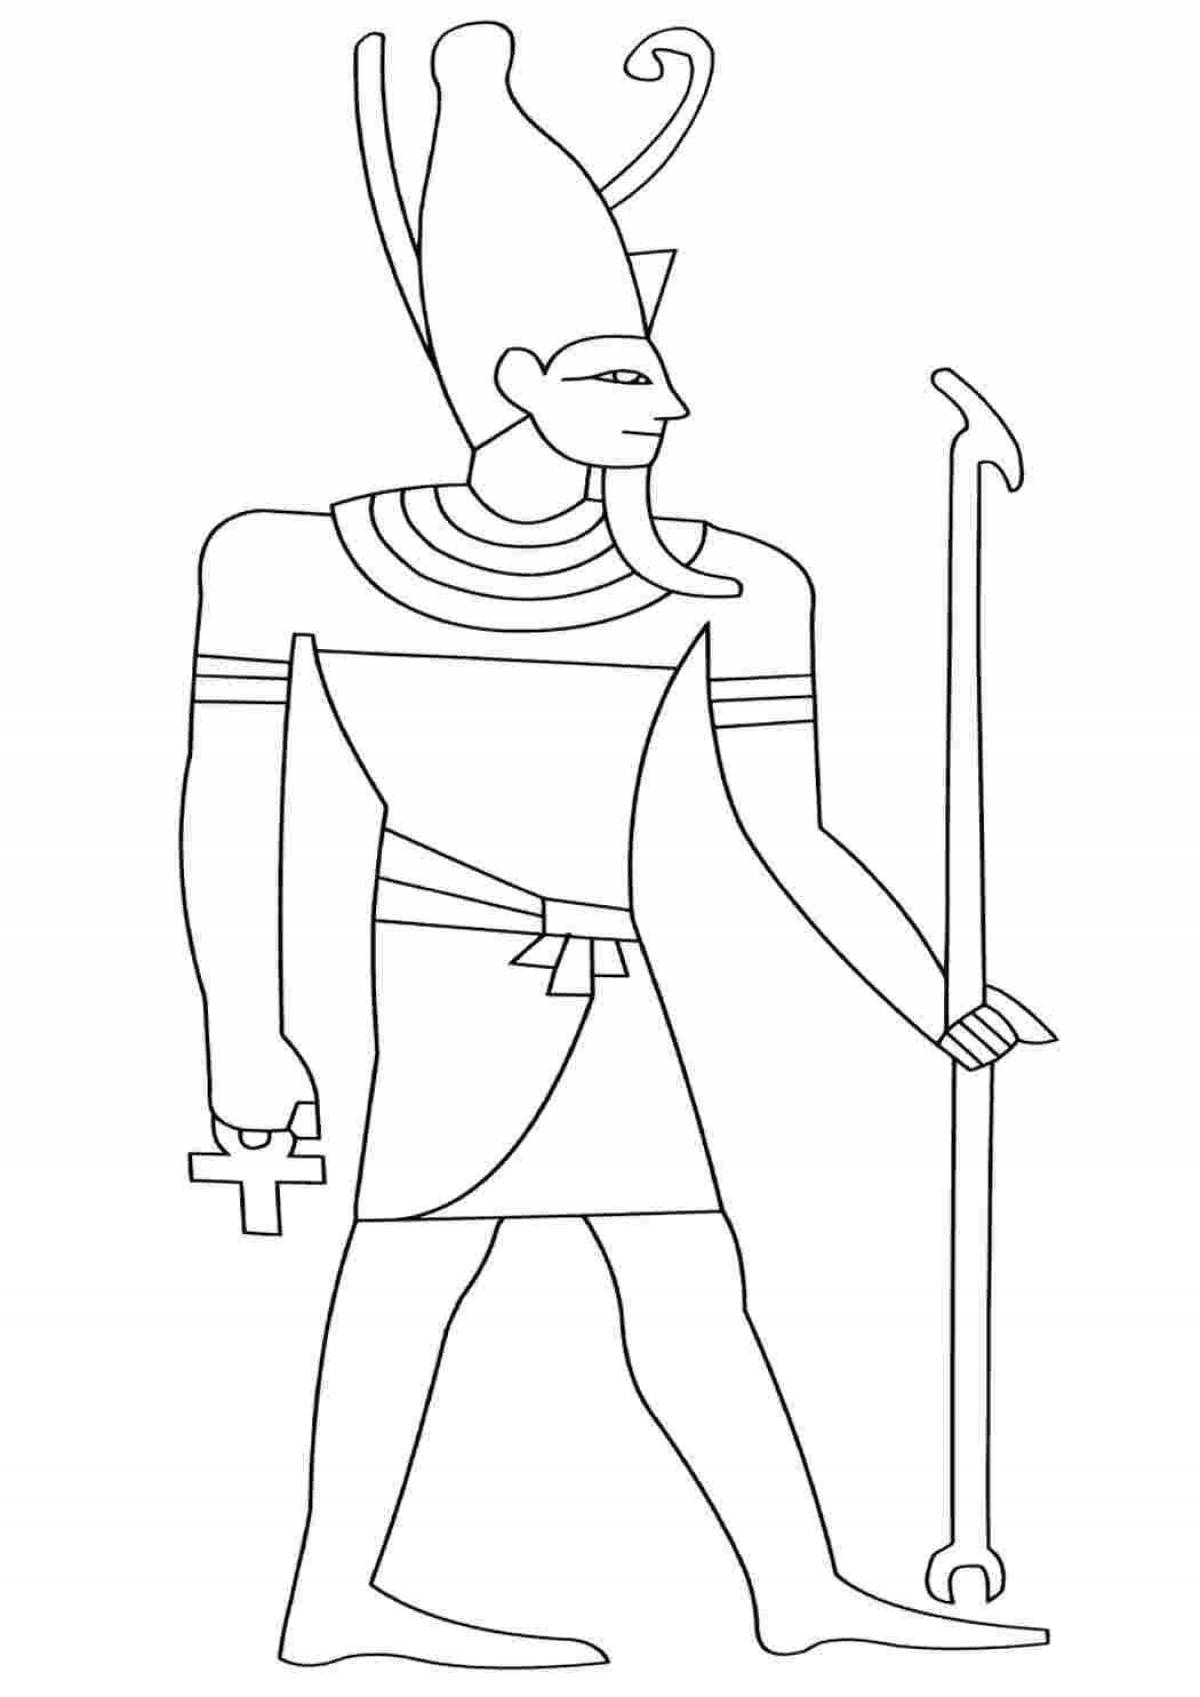 Coloring page shiny pharaoh